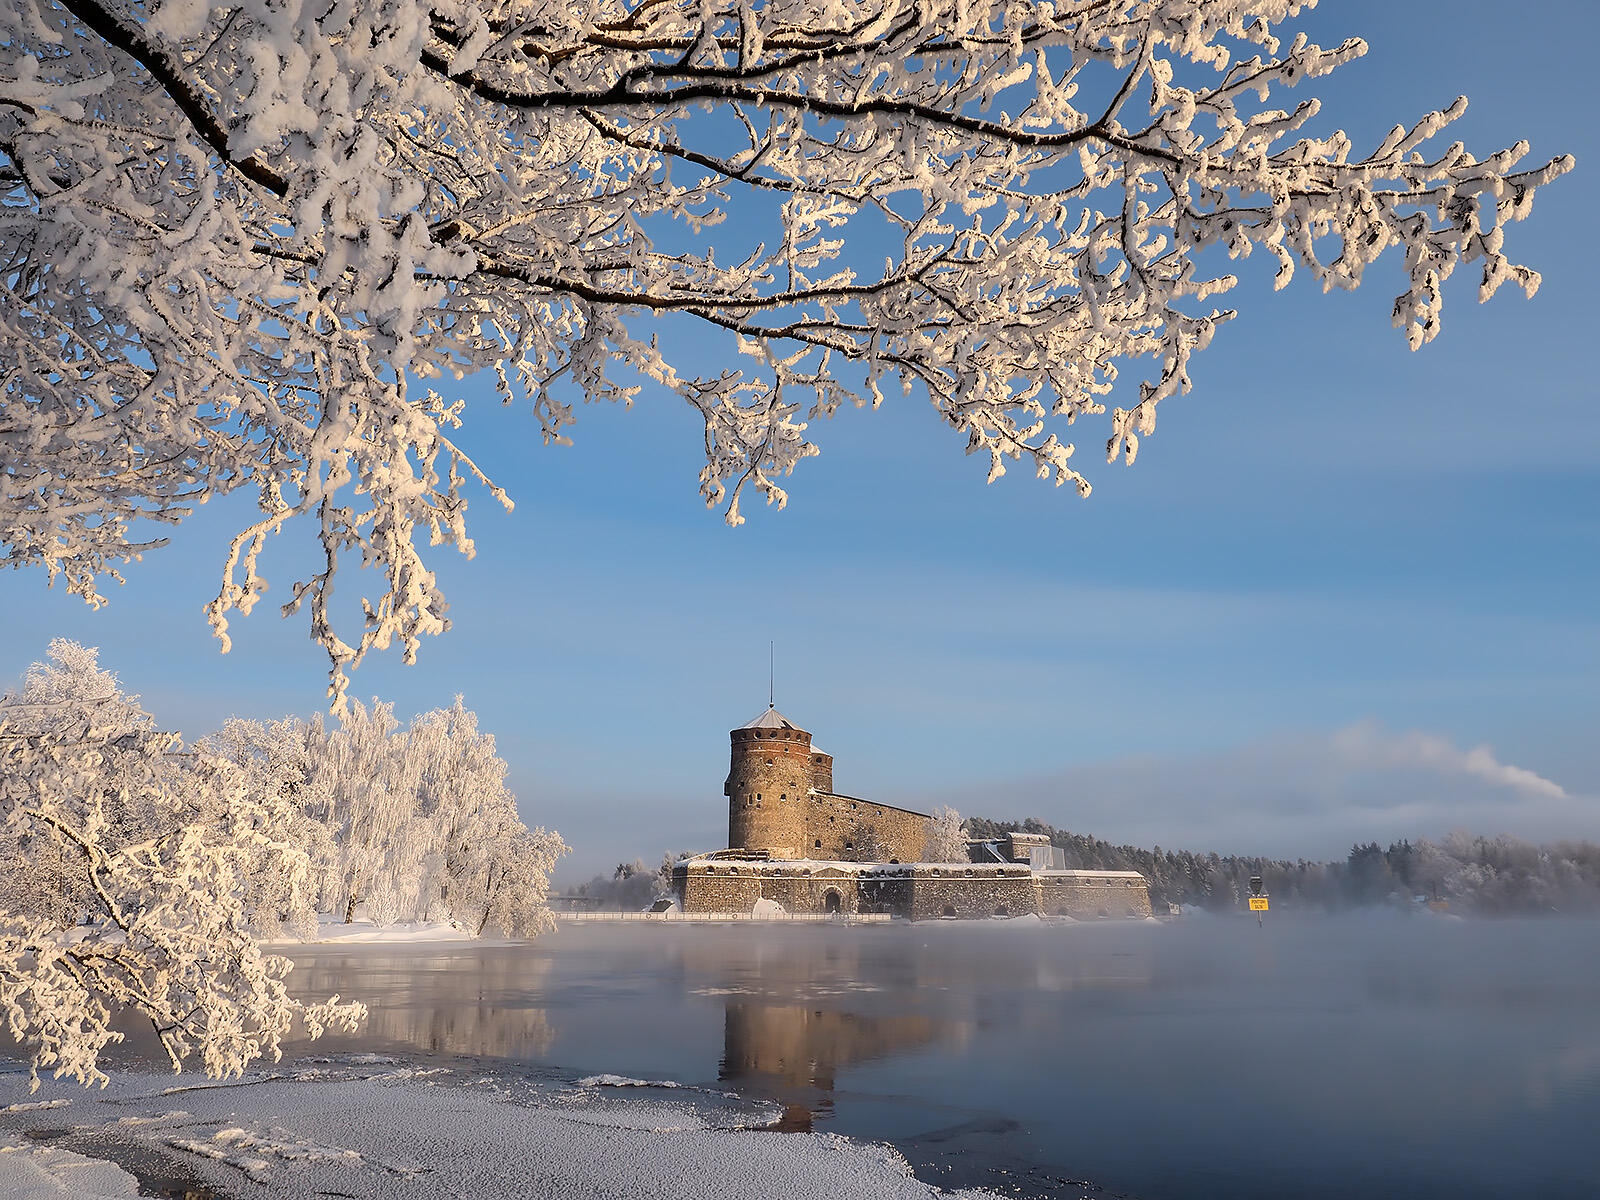 Wallpapers Castles of Finland landscape pond on the desktop